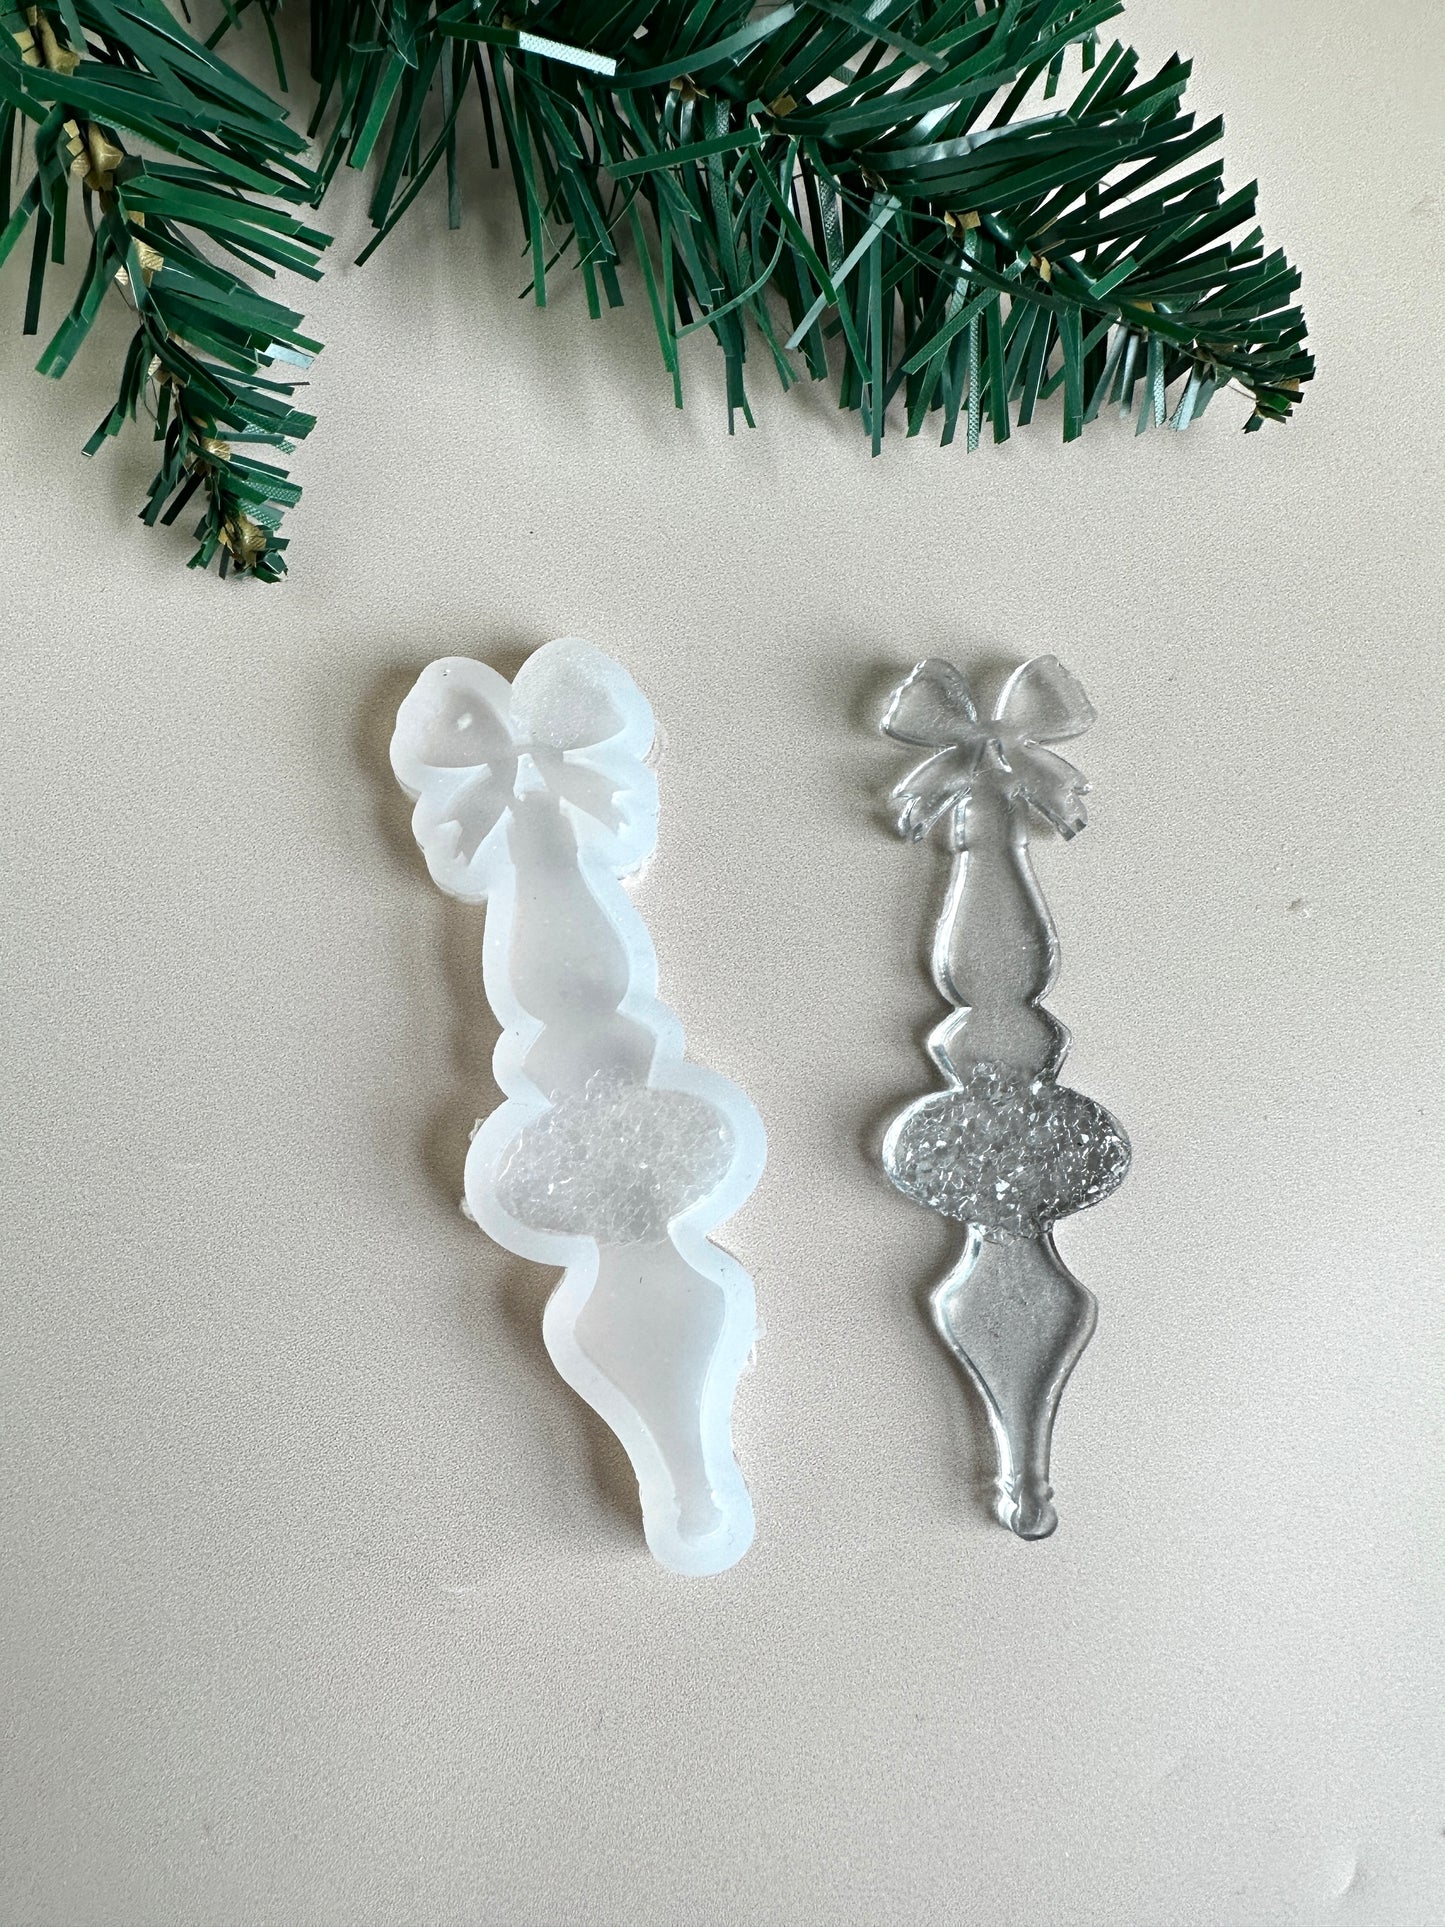 Weihnachtsbaumschmuck-Silikonform, funkelnde Kristalle im Kerzendesign, ideal für Weihnachten, einzigartiges Geschenk für Künstler